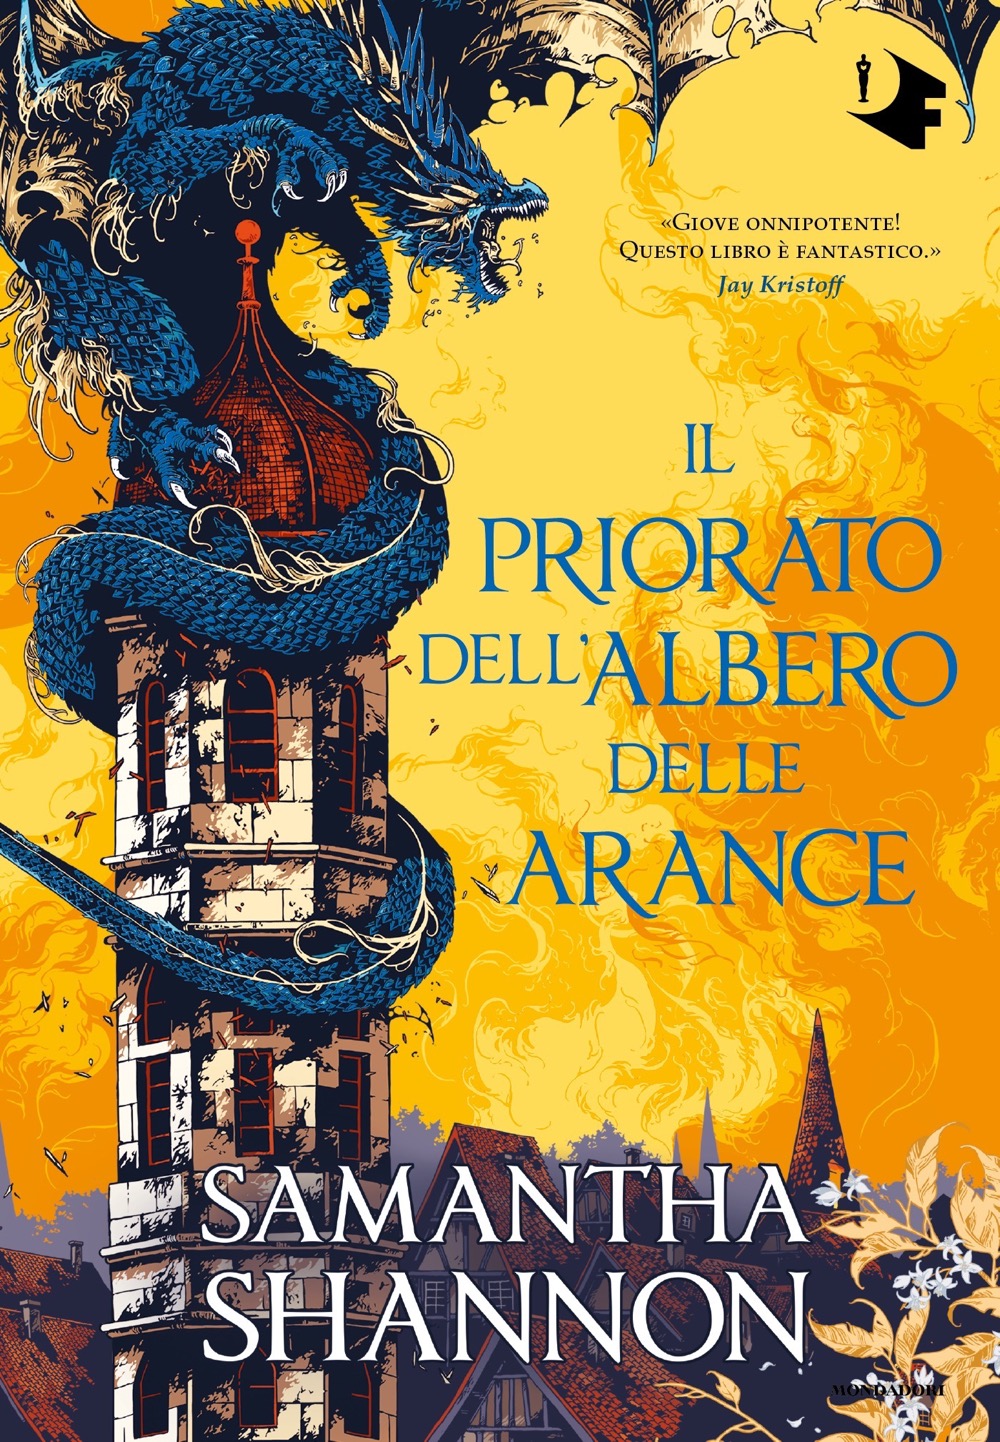 Samantha Shannon: Il priorato dell'albero delle arance (Hardcover, Oscar Mondadori)